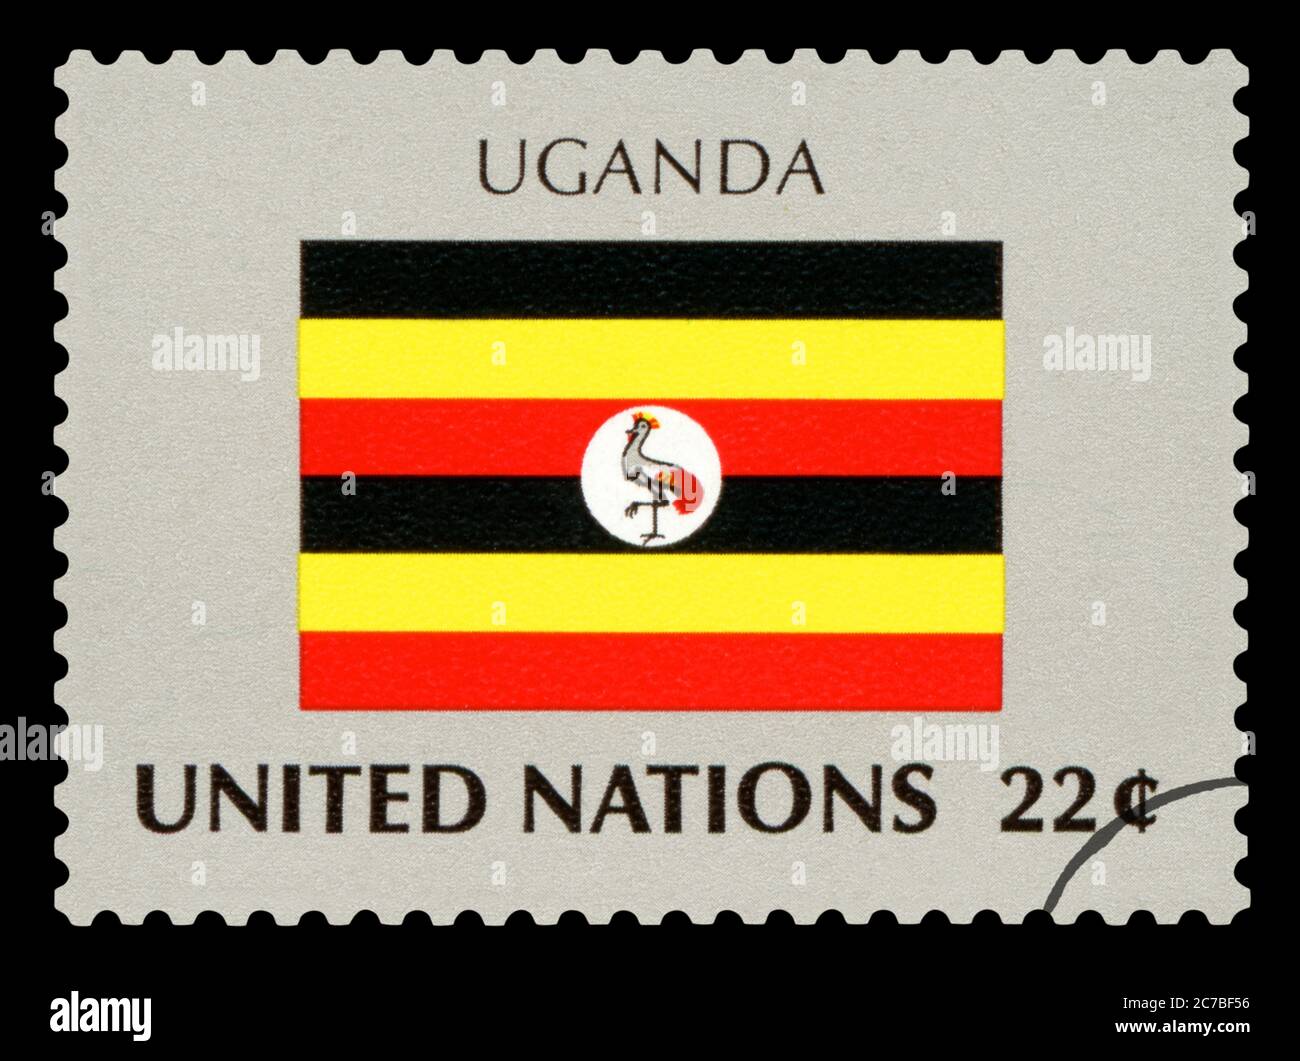 OUGANDA - timbre de poste du drapeau national de l'Ouganda, série des Nations Unies, vers 1984. Isolé sur fond noir. Banque D'Images